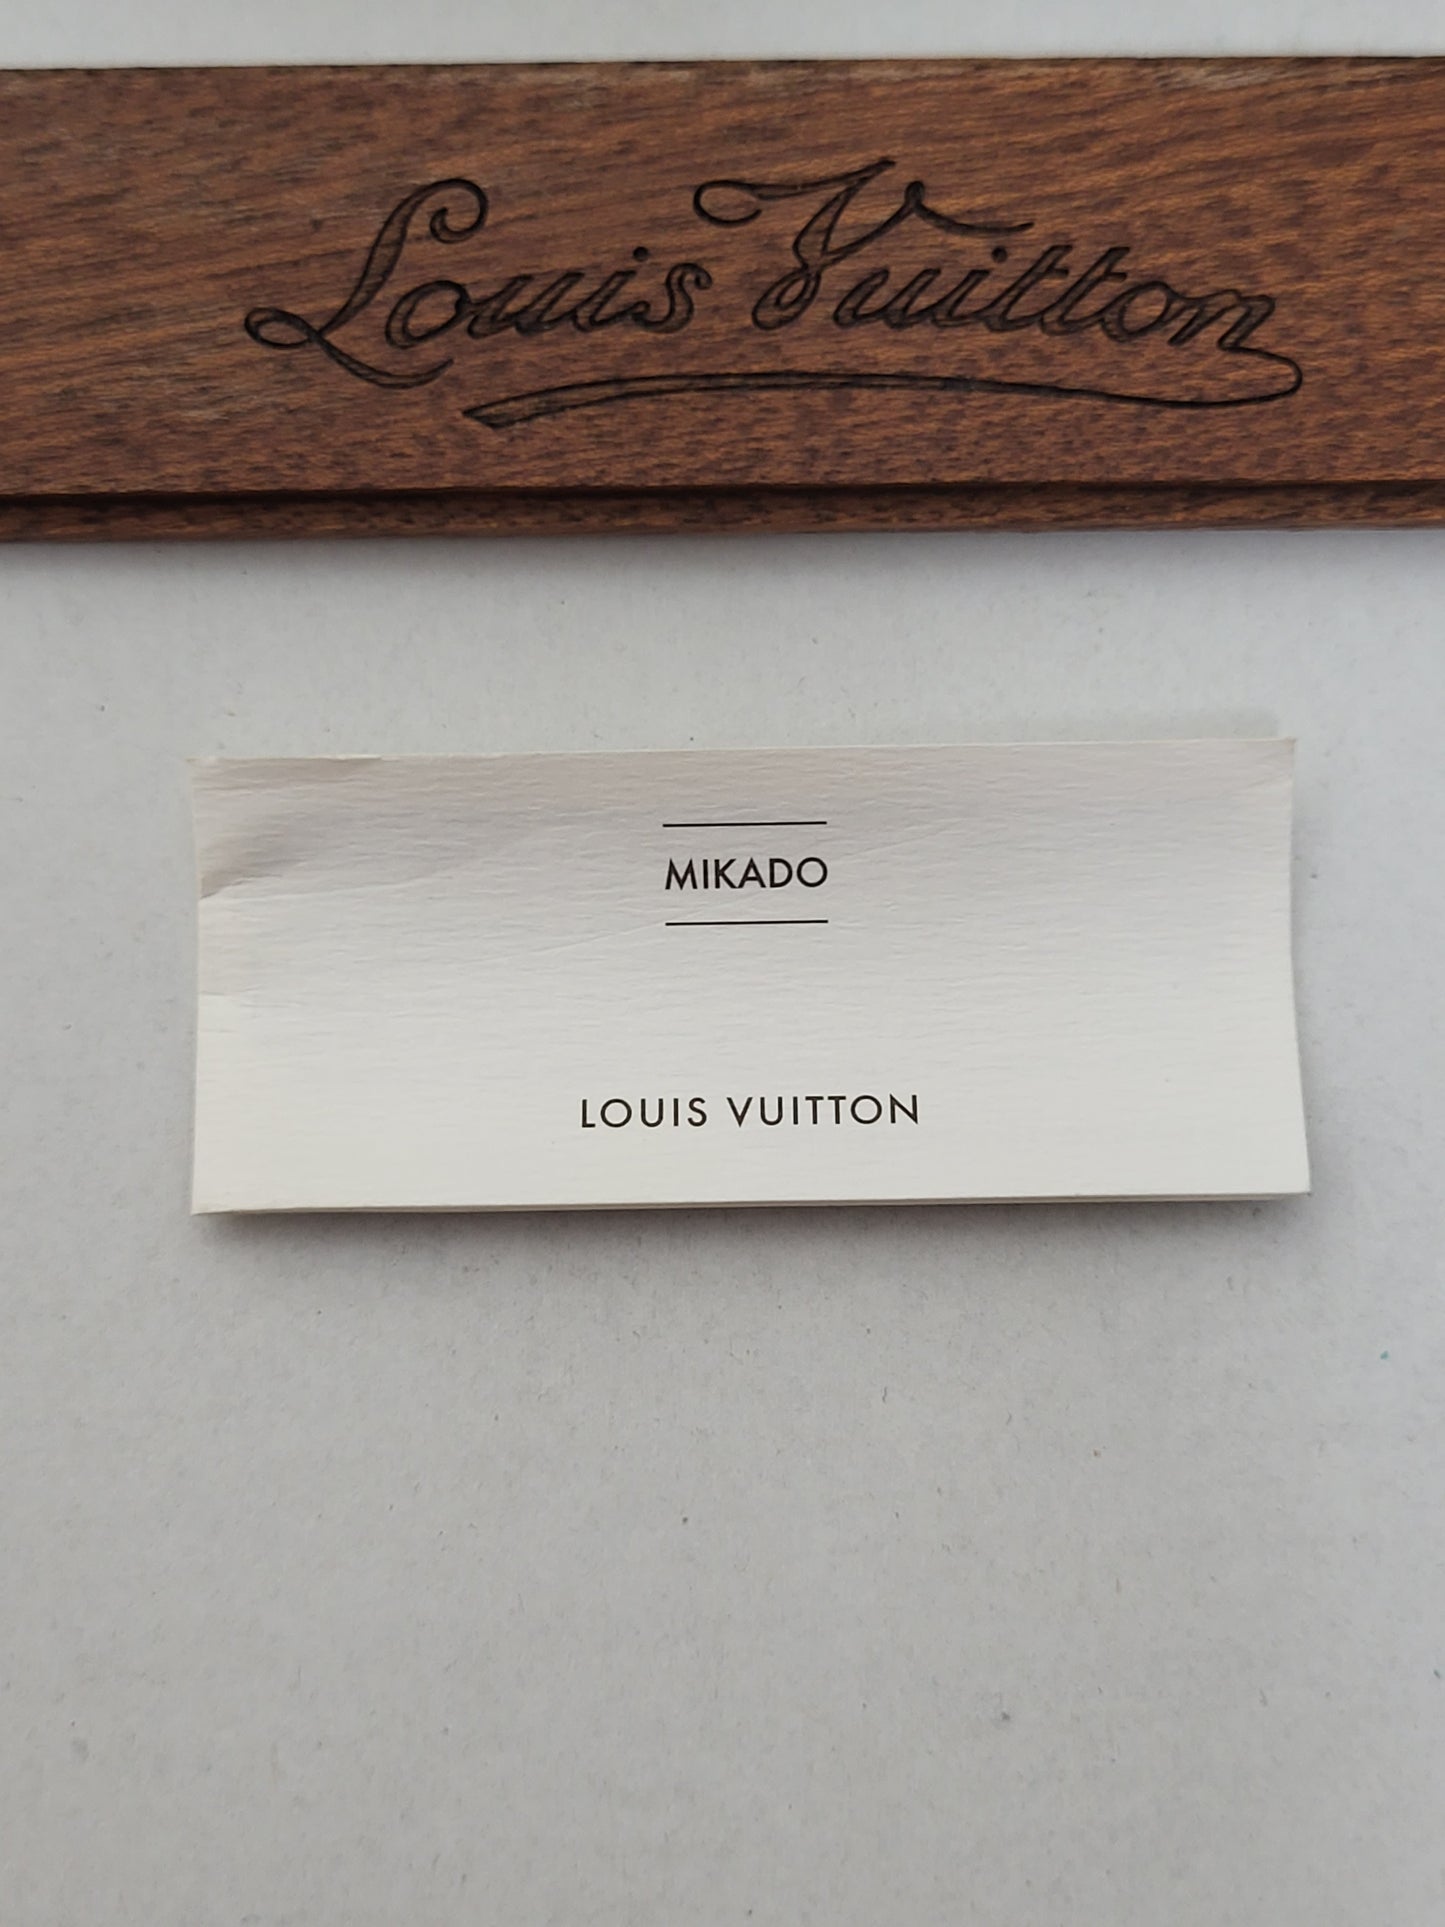 Original/Auth Louis Vuitton - Mikado Spielset - VIP Geschenk - Holzbox